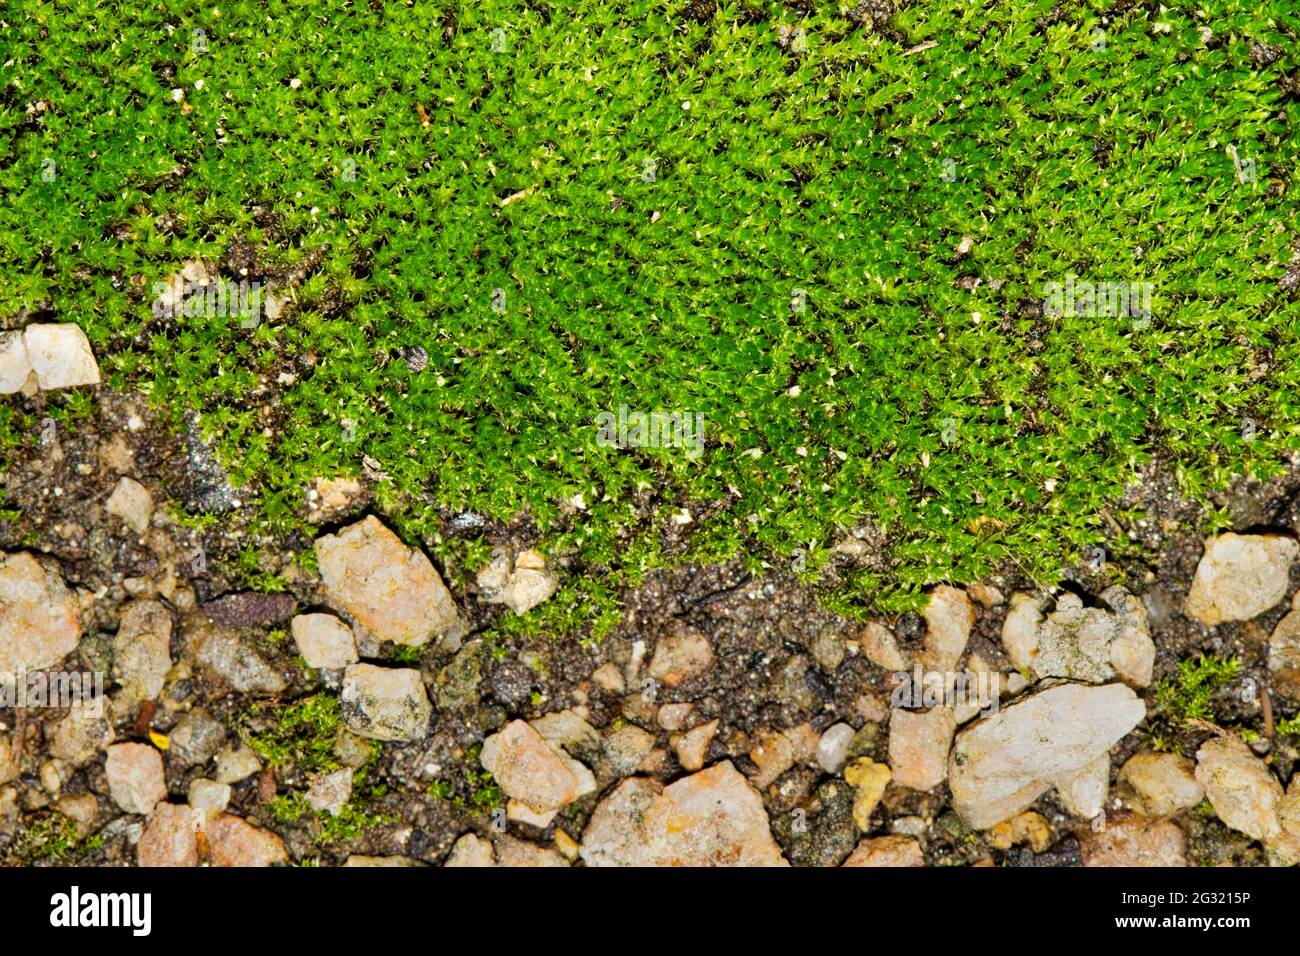 Grumo verde di muschio (Bryophyta) che cresce intorno a piccoli ciottoli con separazione e fuoco selettivo. Foto Stock